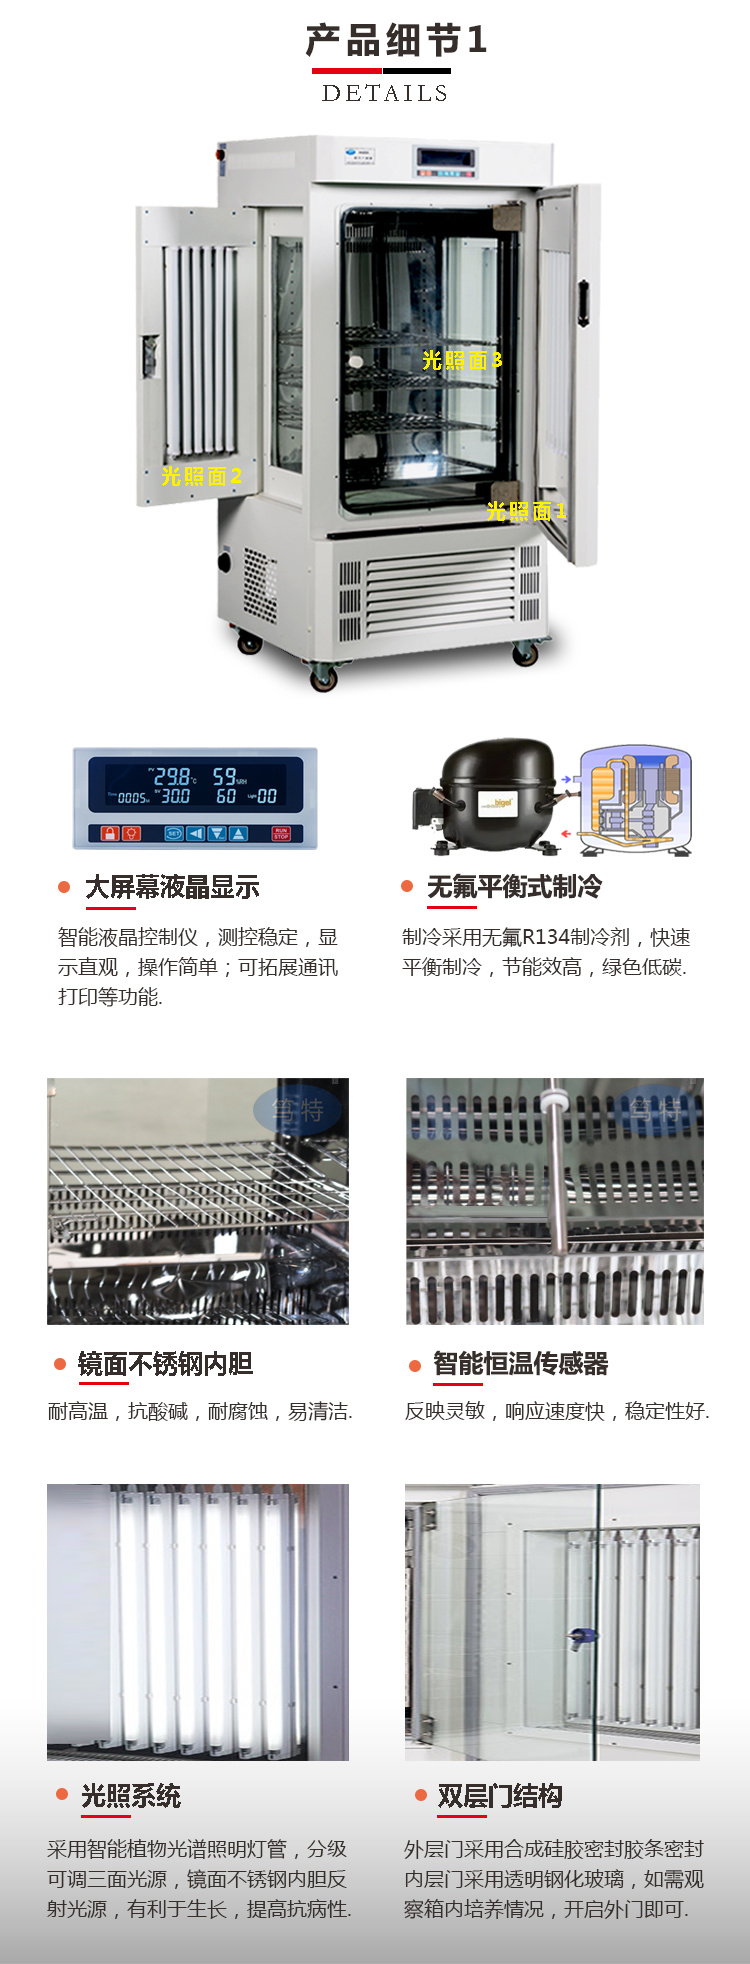 上海笃特GZP-300实验恒温恒湿光照培养箱 智能植物光照试验箱示例图3